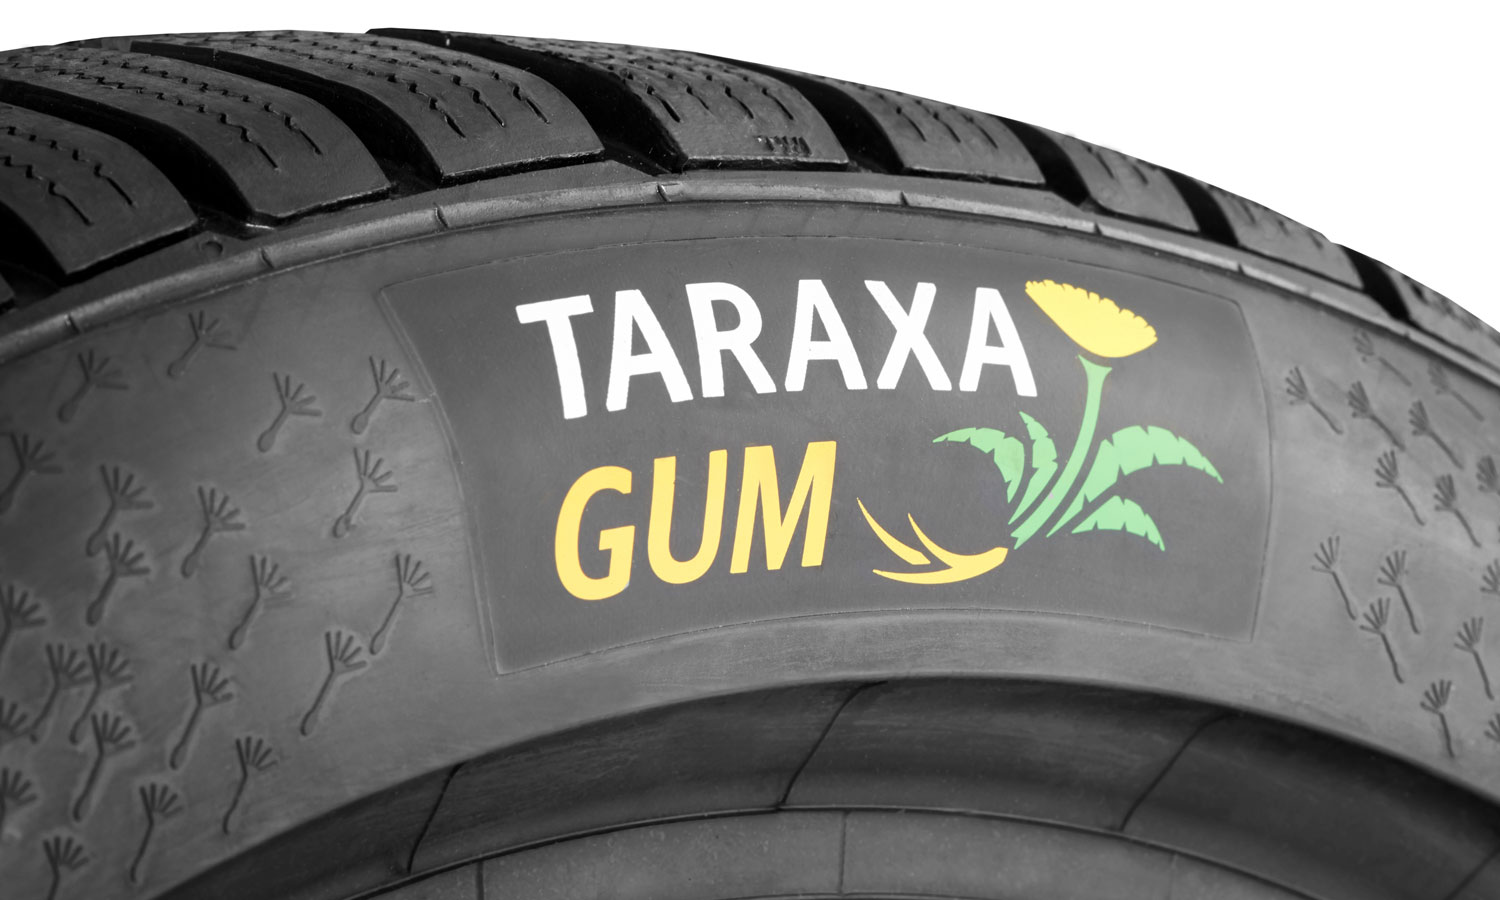 Continental sustainable dandelion rubber Taraxagum tires